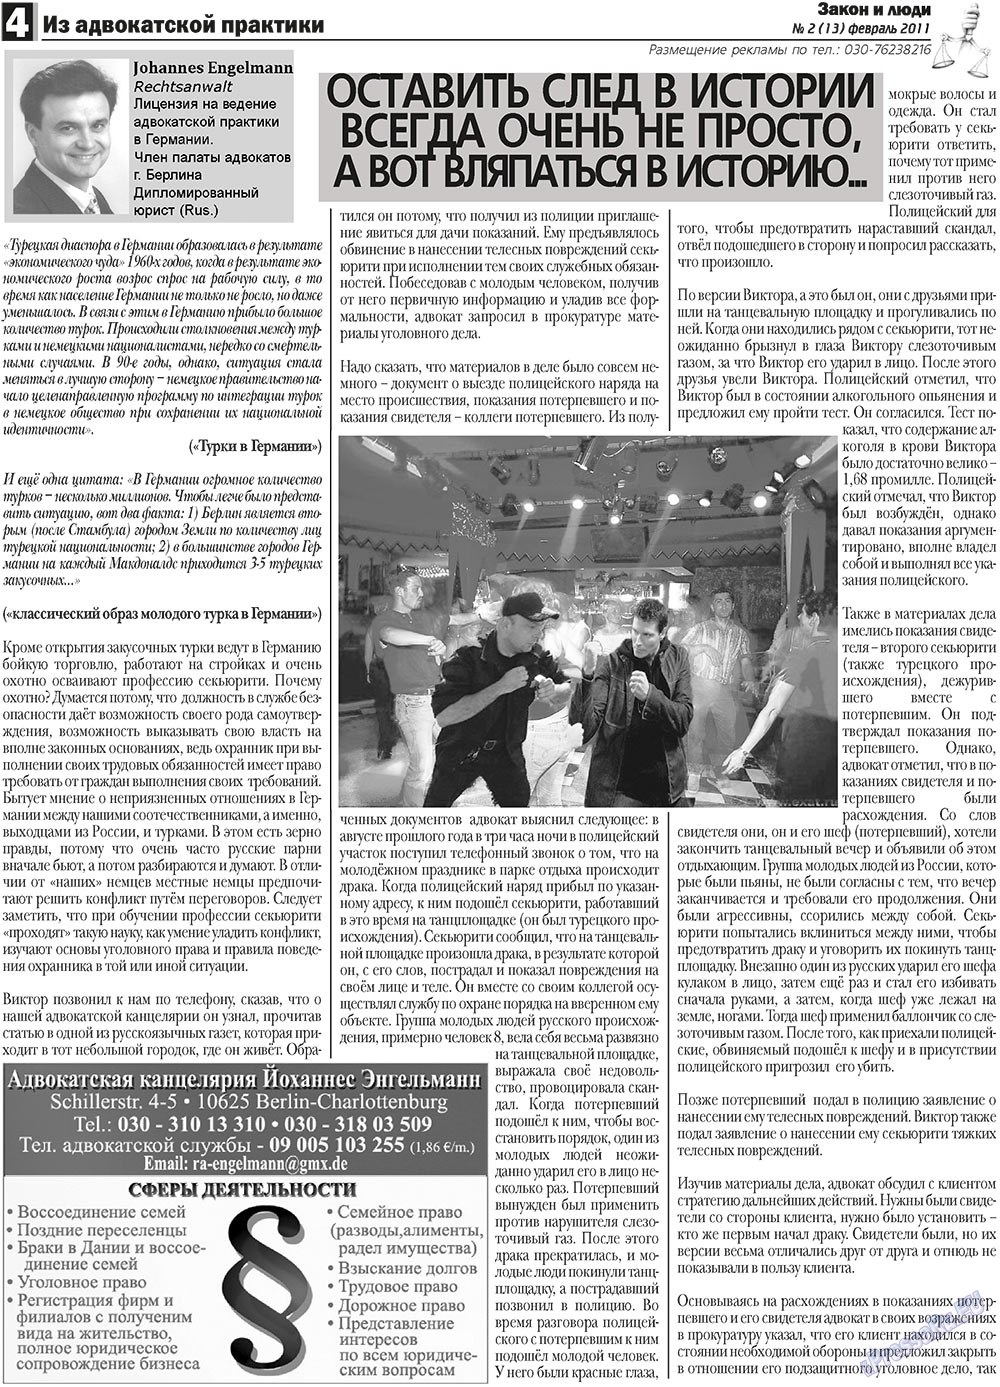 Закон и люди, газета. 2011 №2 стр.4